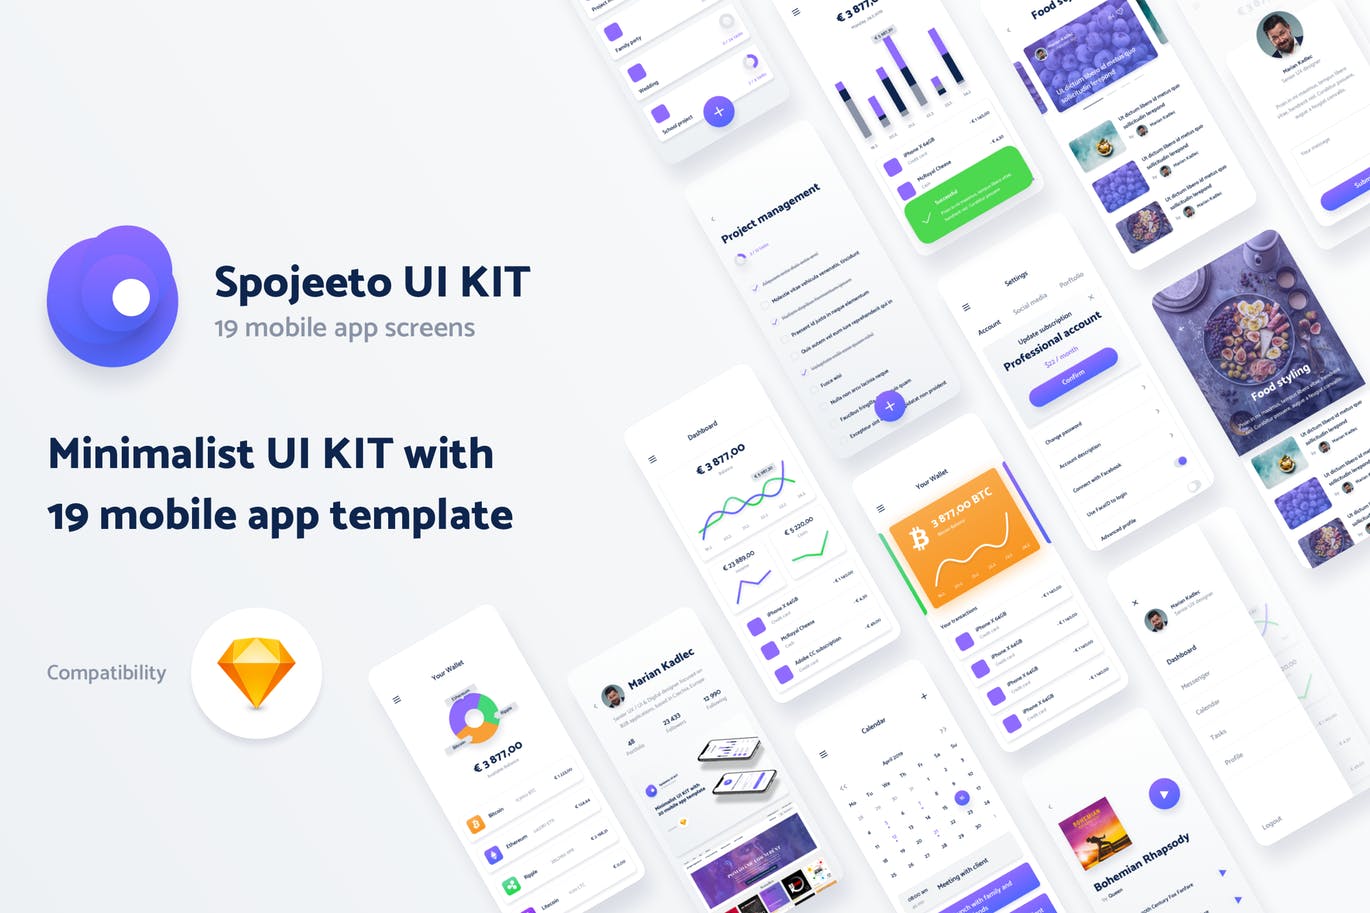 极简主义设计风格APP应用UI设计16图库精选套件v2 Vol. 2 – Spojeeto Mobile App UI Kit插图